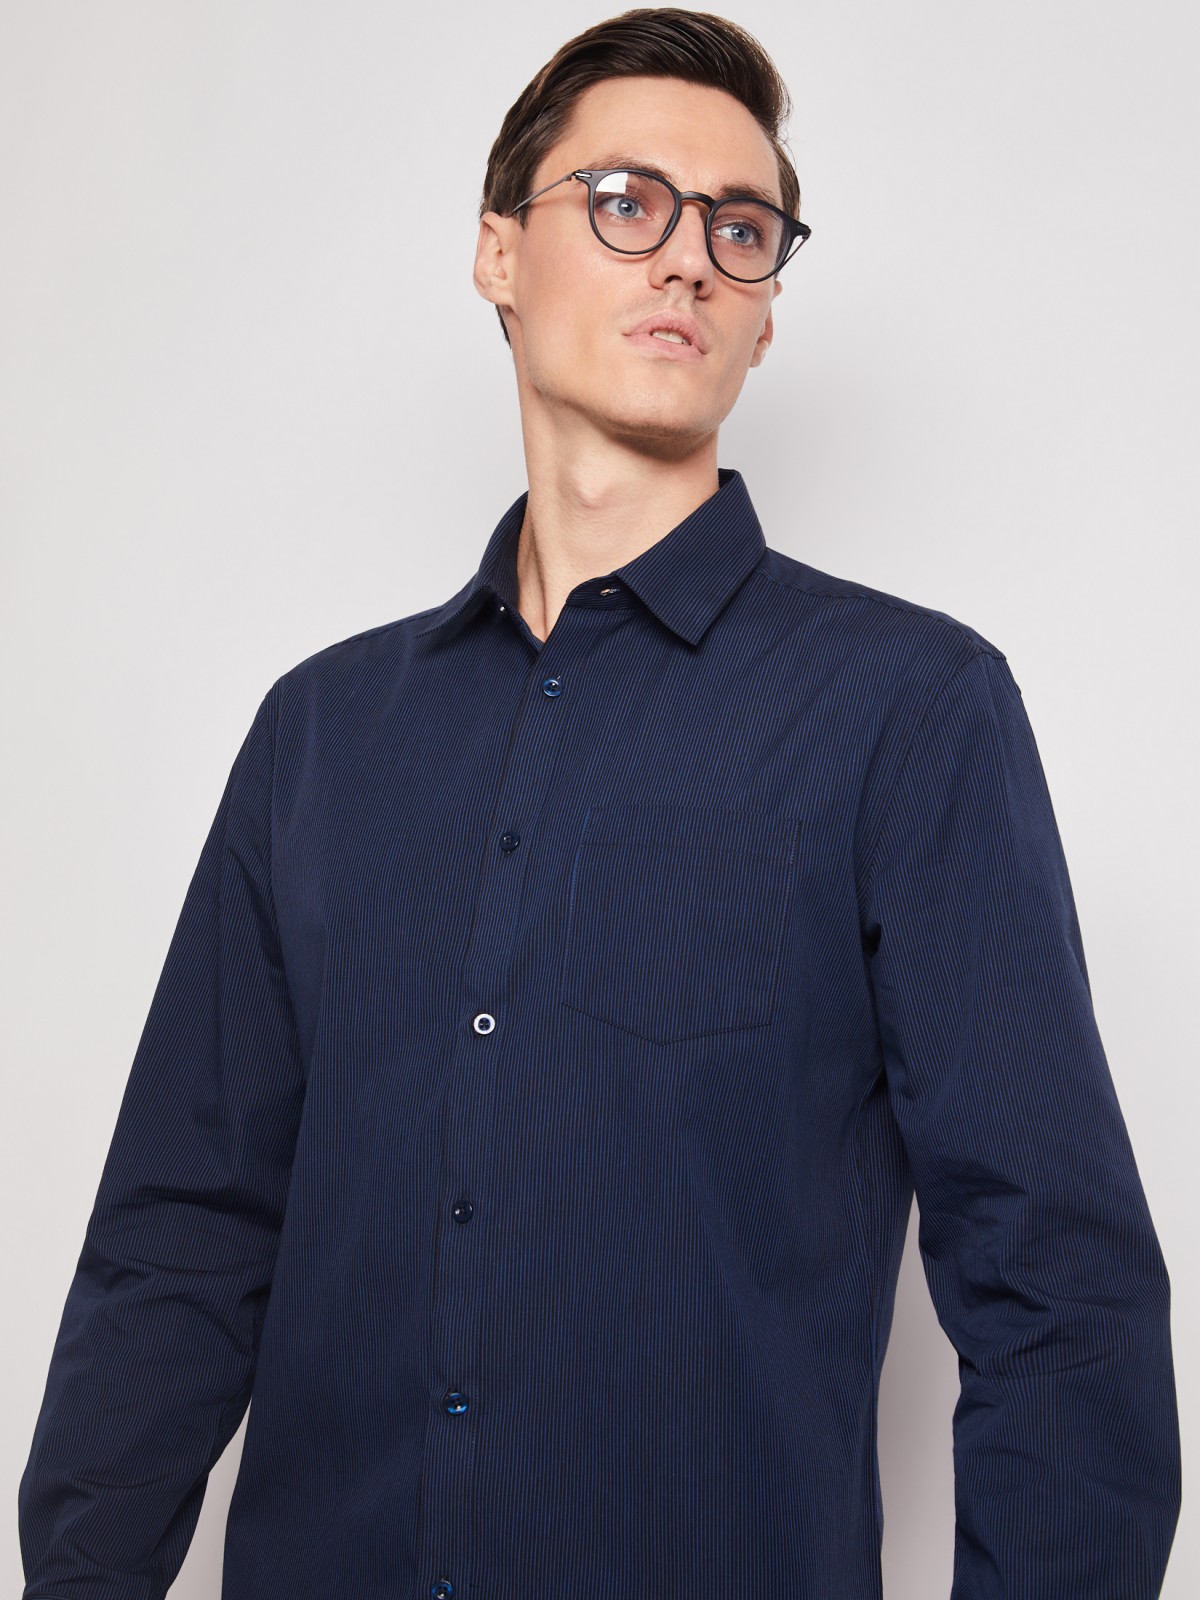 Рубашка в полоску с длинным рукавом zolla 012112159042, цвет темно-синий, размер M - фото 2